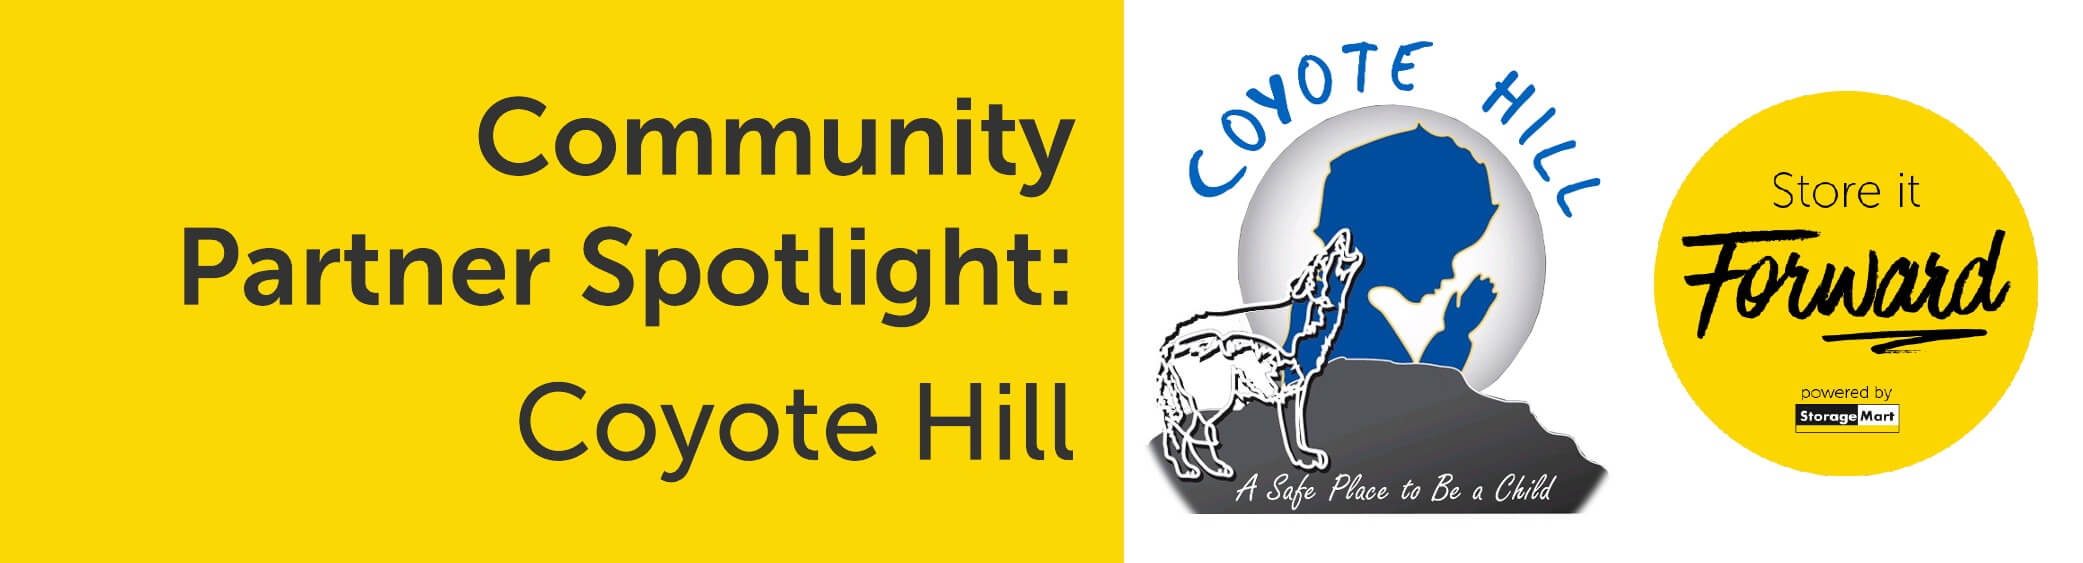 Community Partner Spotlight: Coyote Hill Christian Children’s Home